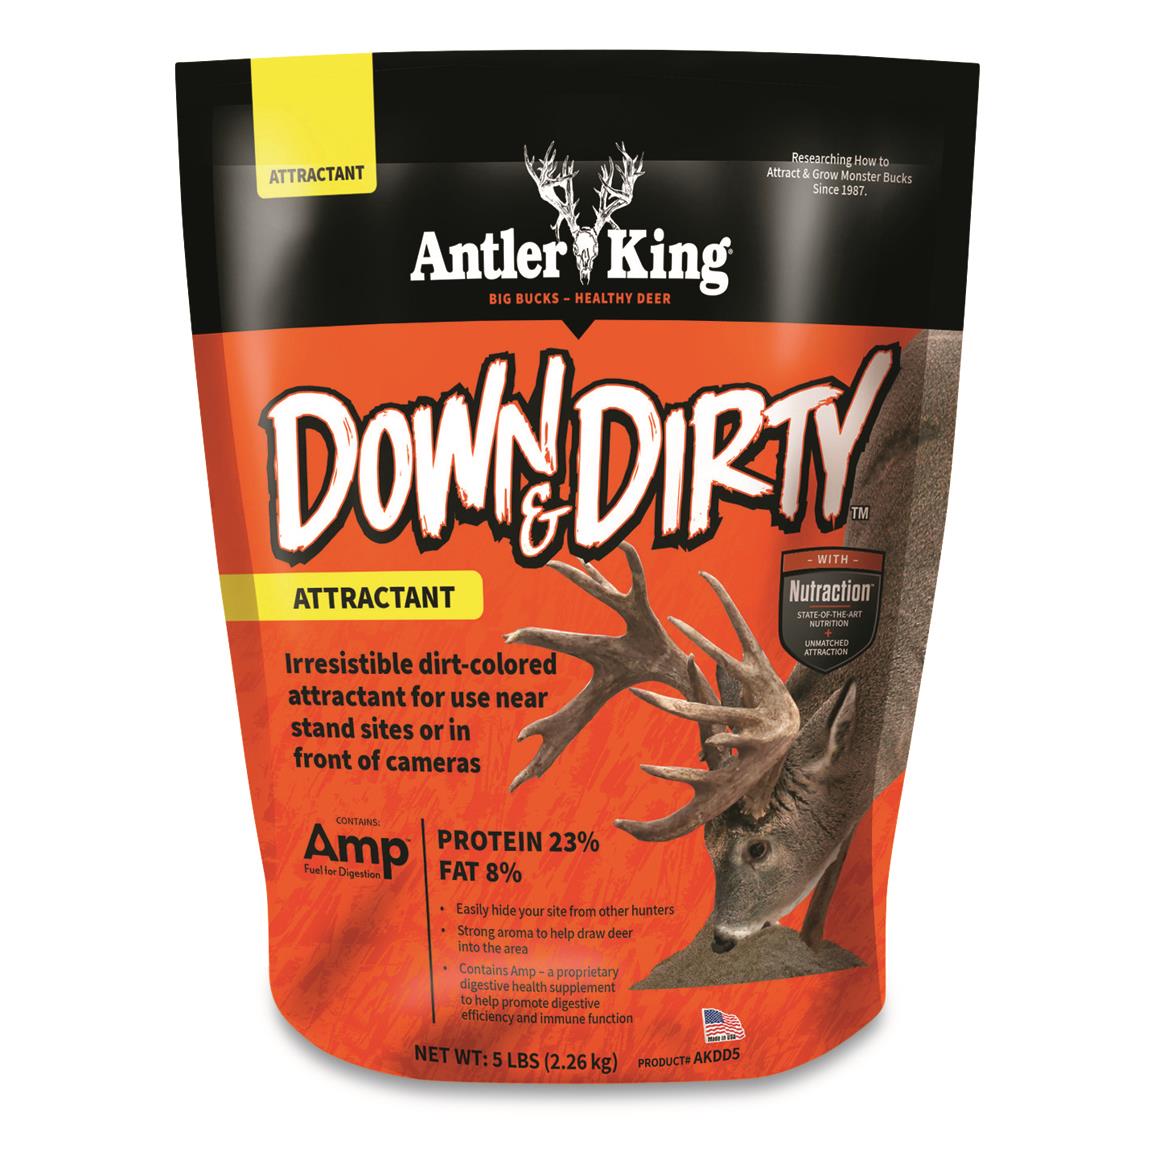 Antler King Down & Dirty Deer Attractant, 5 lbs.